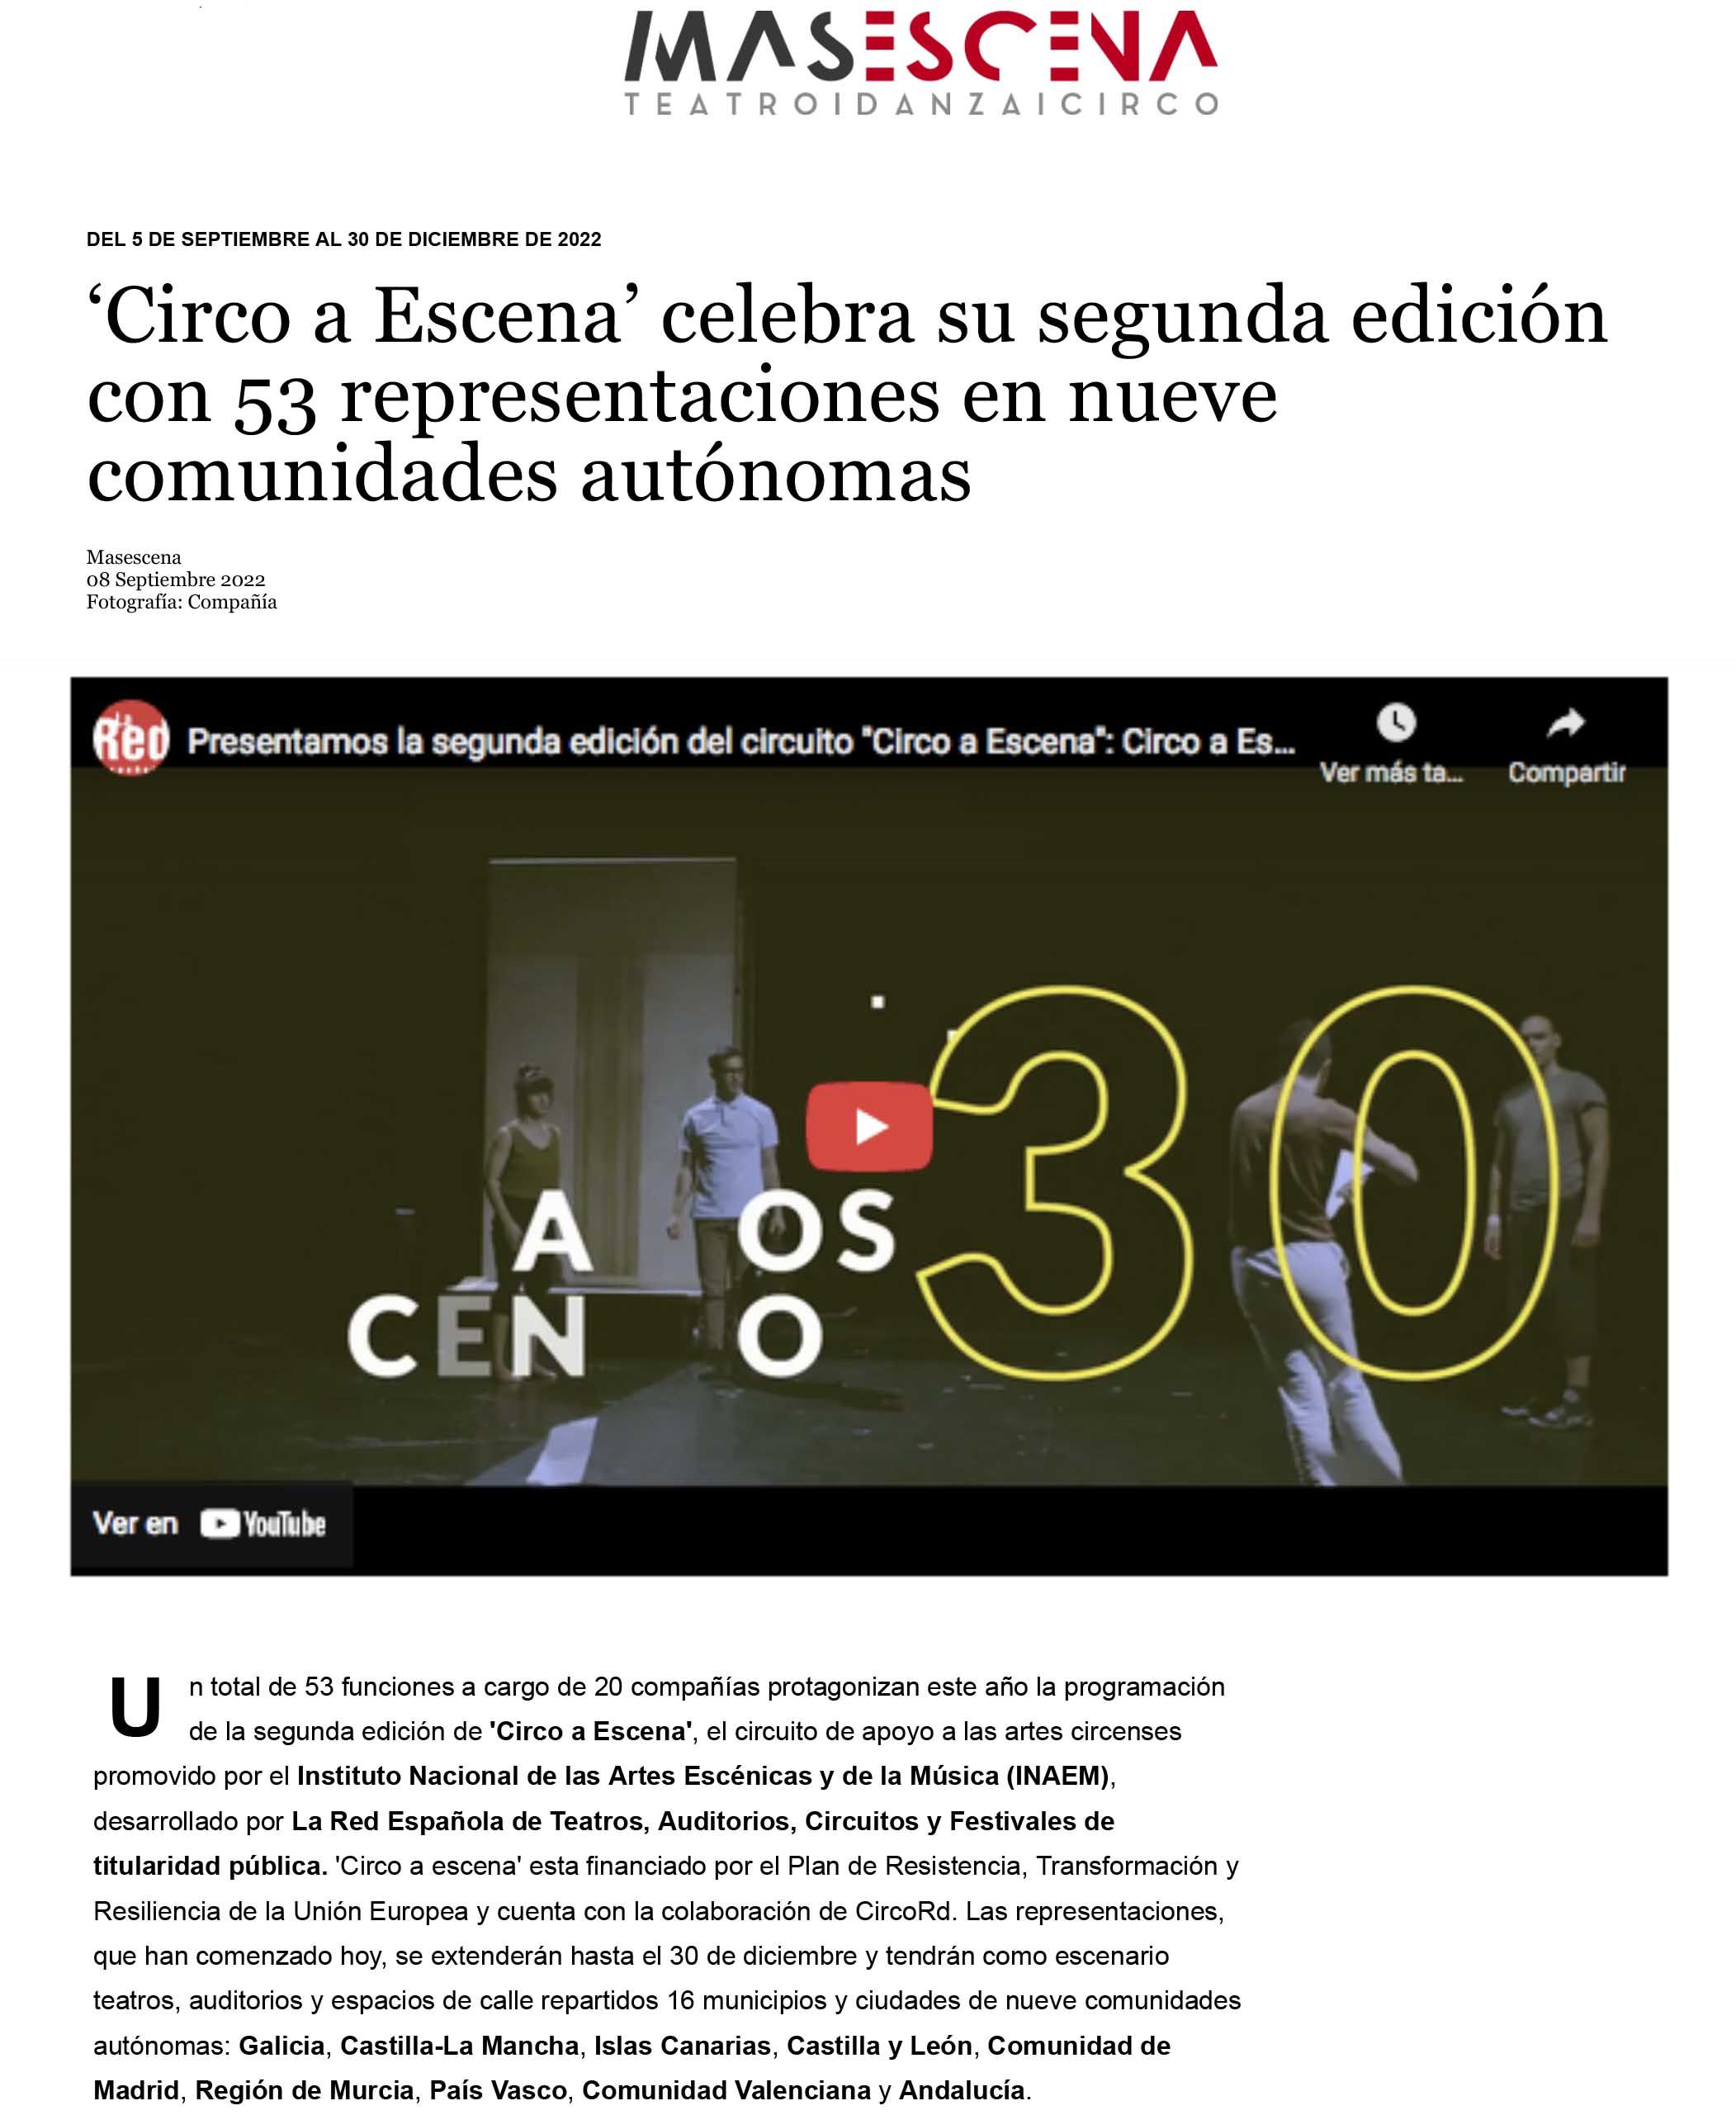 ‘Circo a Escena’ celebra su segunda edición con 53 representaciones en nueve comunidades autónomas